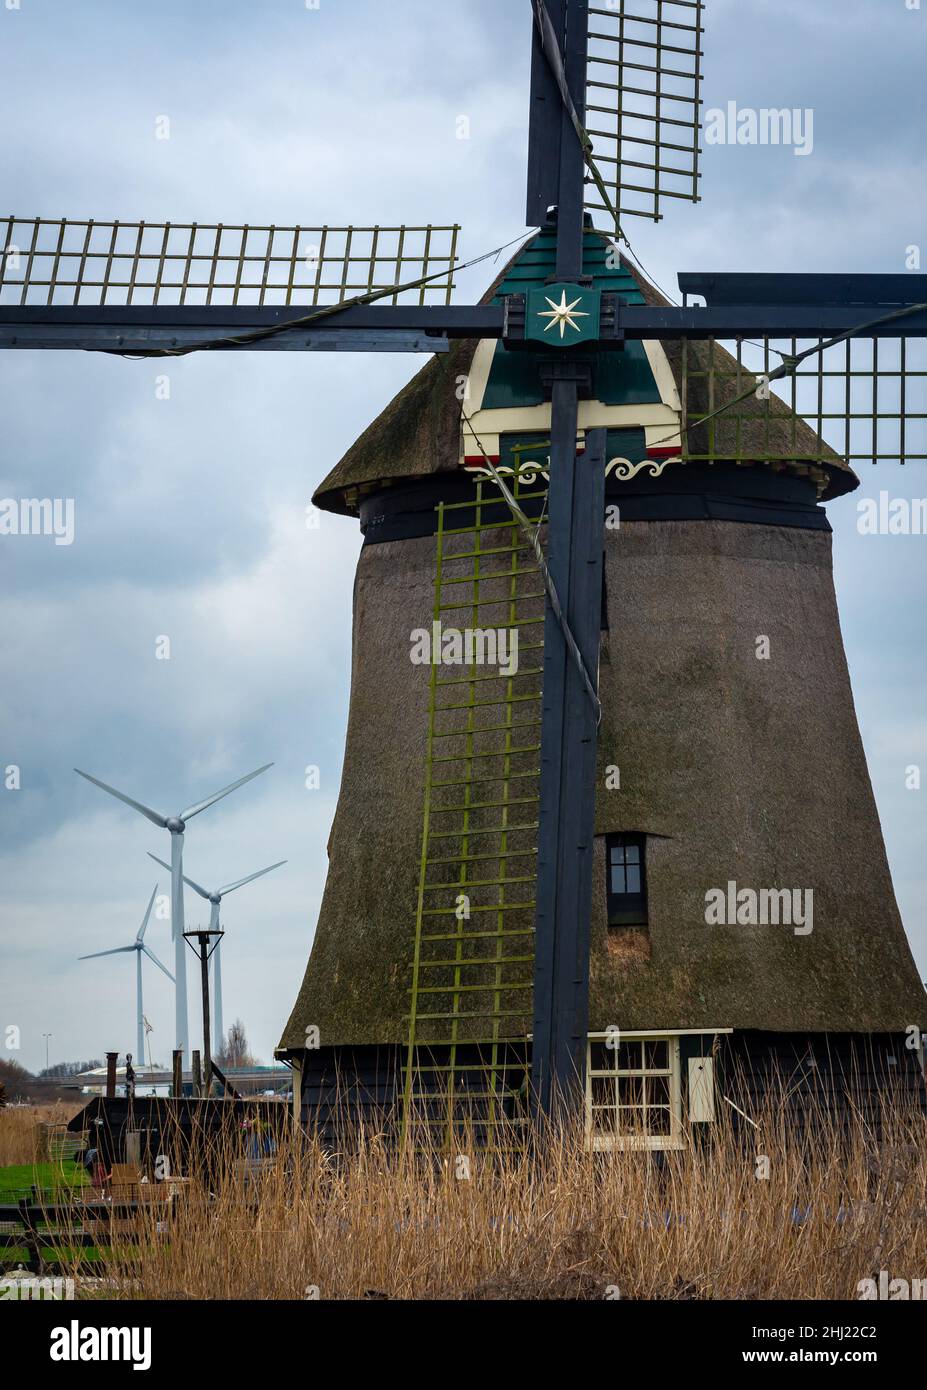 Histórico molino de viento holandés frente a los aerogeneradores modernos, comparación de tecnología antigua y nueva Foto de stock